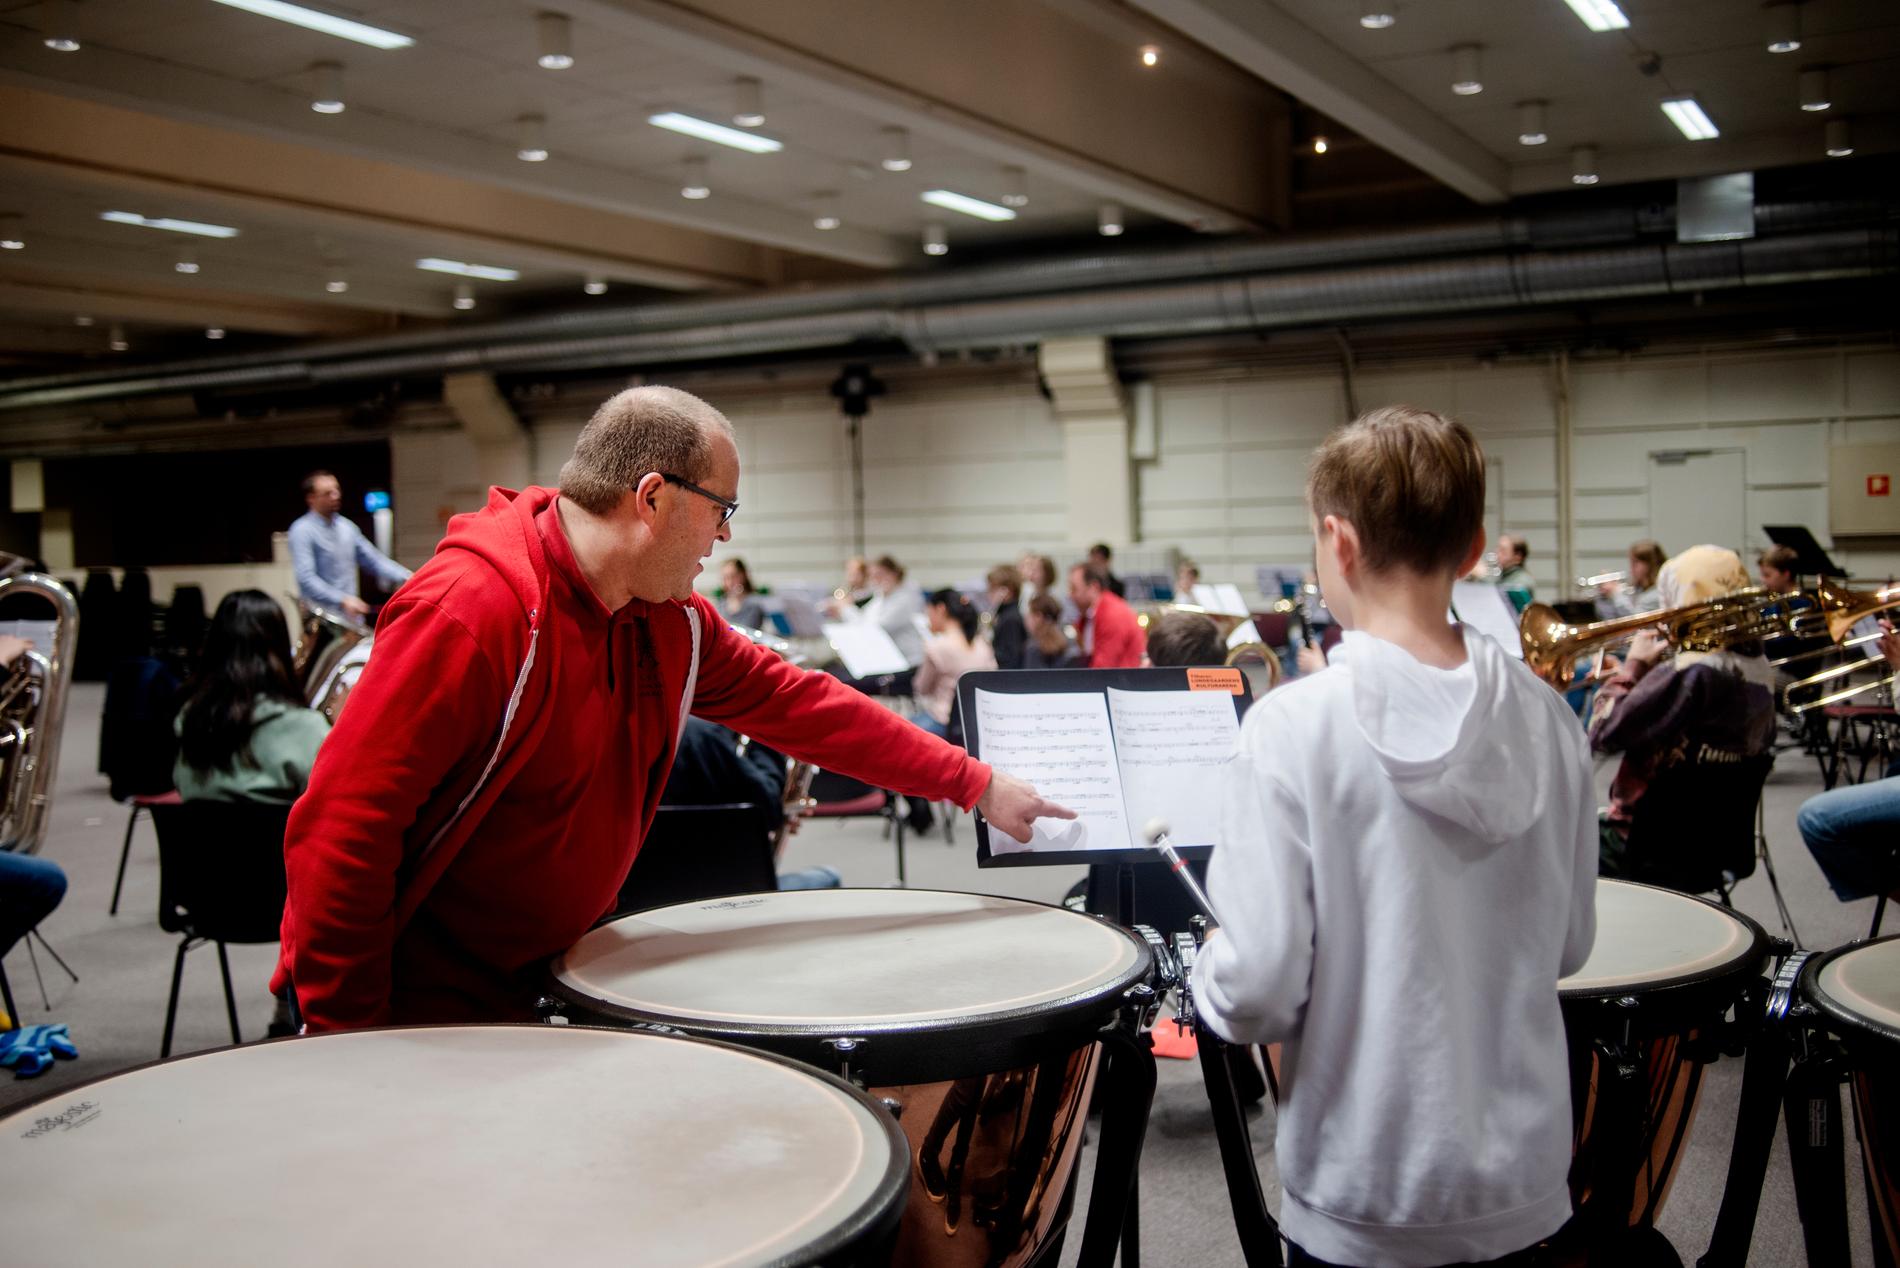 Midtun Skoles Musikkorps har sin første øving etter nyttår. For anledningen i Lungegaardens Kulturarena på Minde.